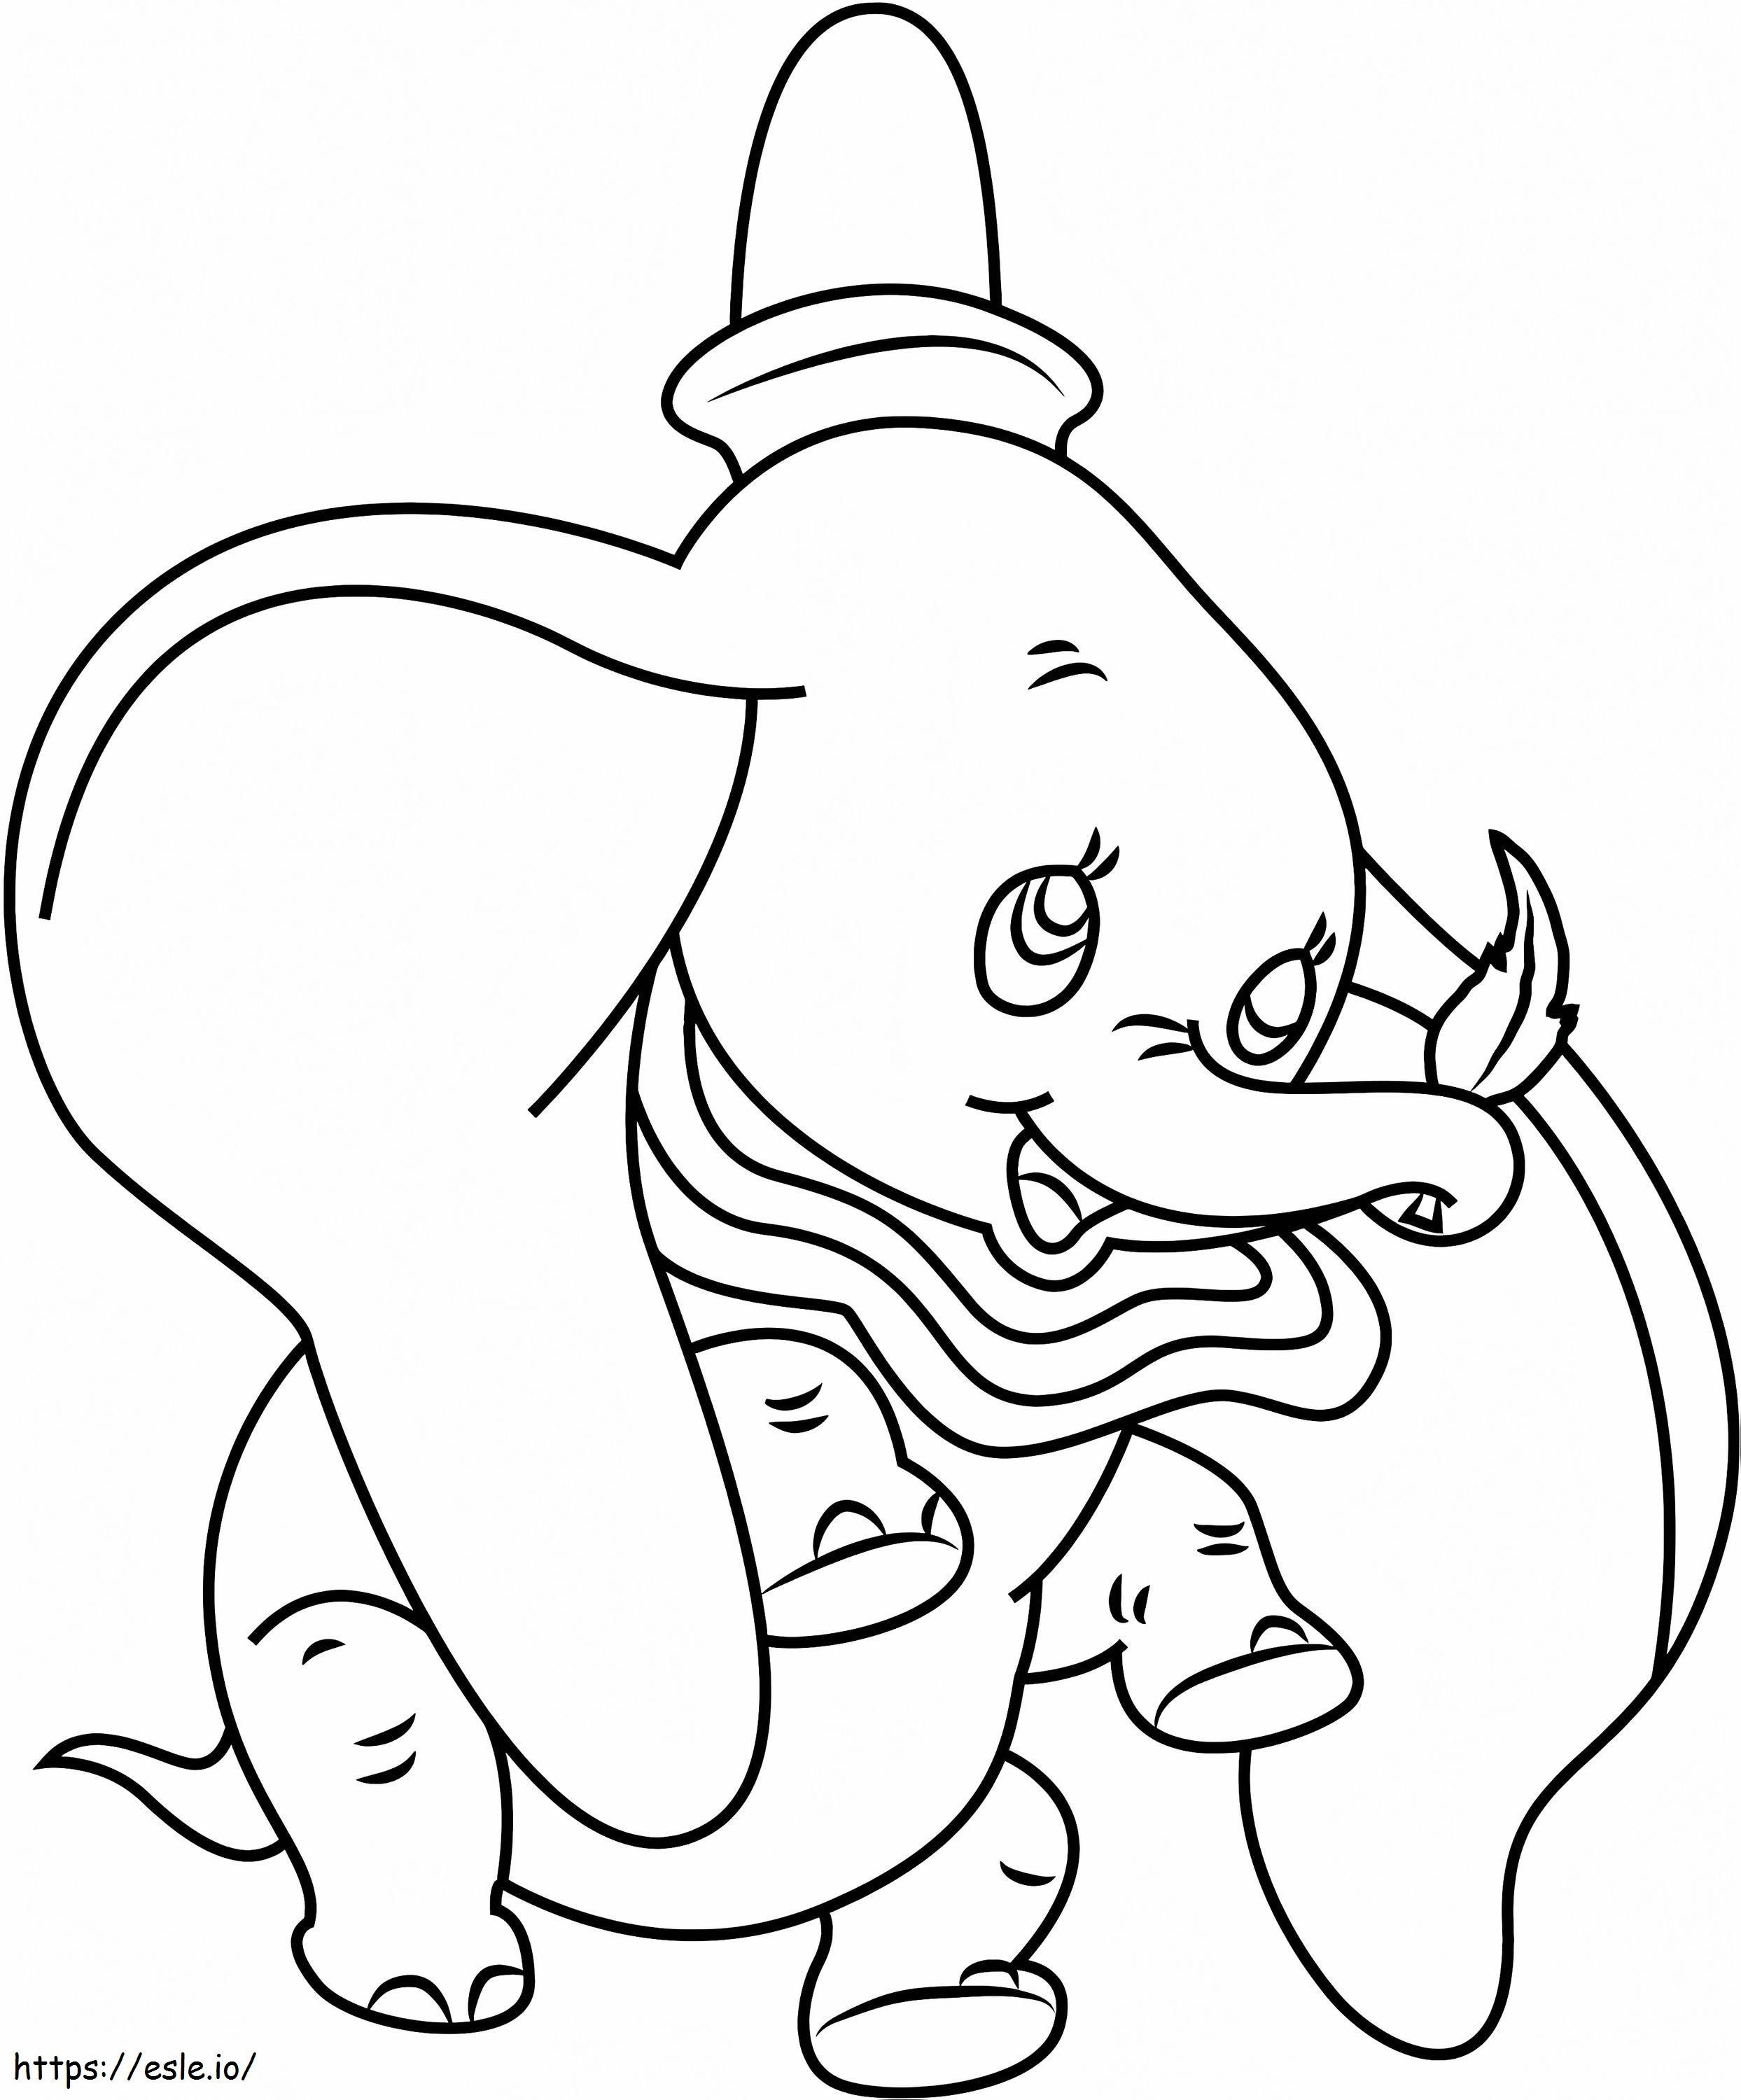 Coloriage 1530929502 Feuille de maintien Dumbo A4 à imprimer dessin